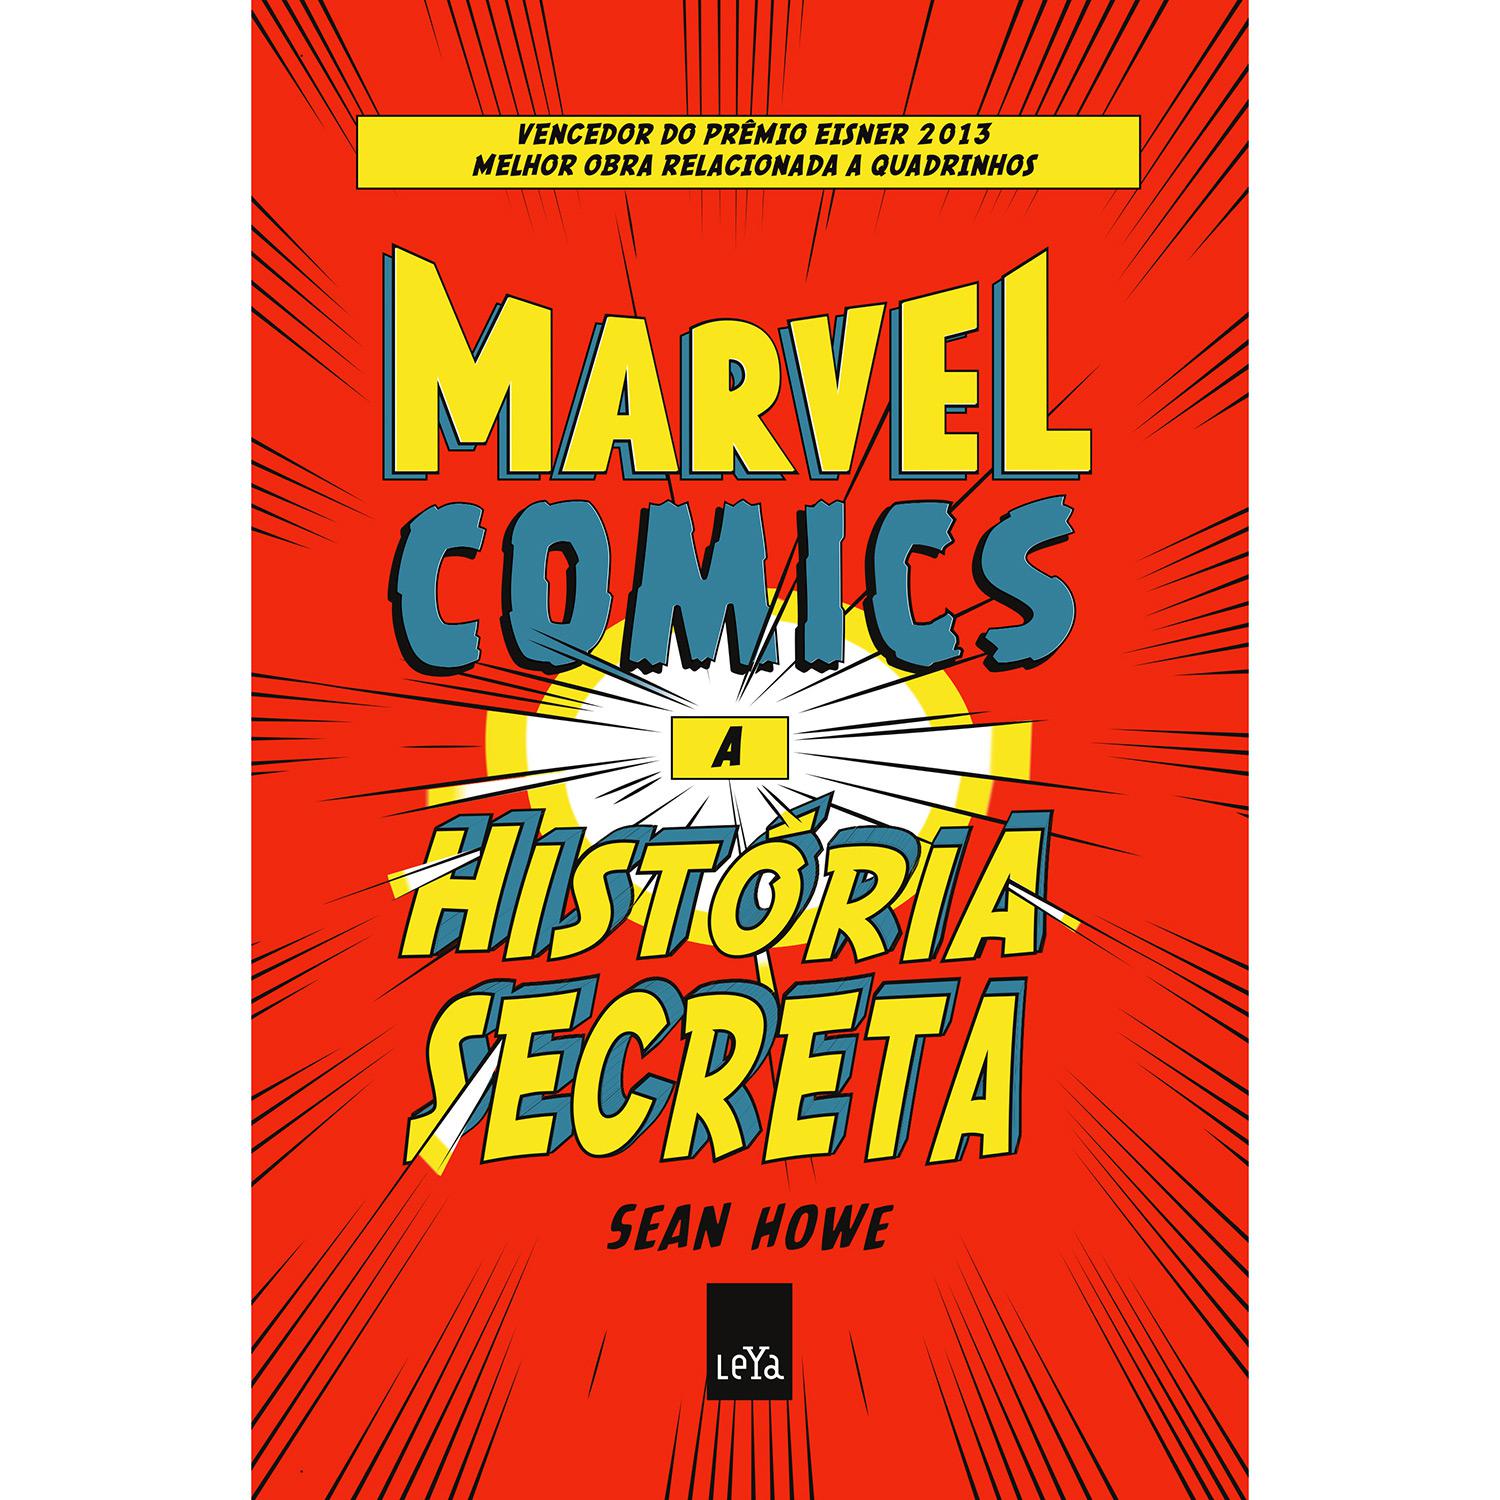 Livro - Marvel Comics: A História Secreta é bom? Vale a pena?